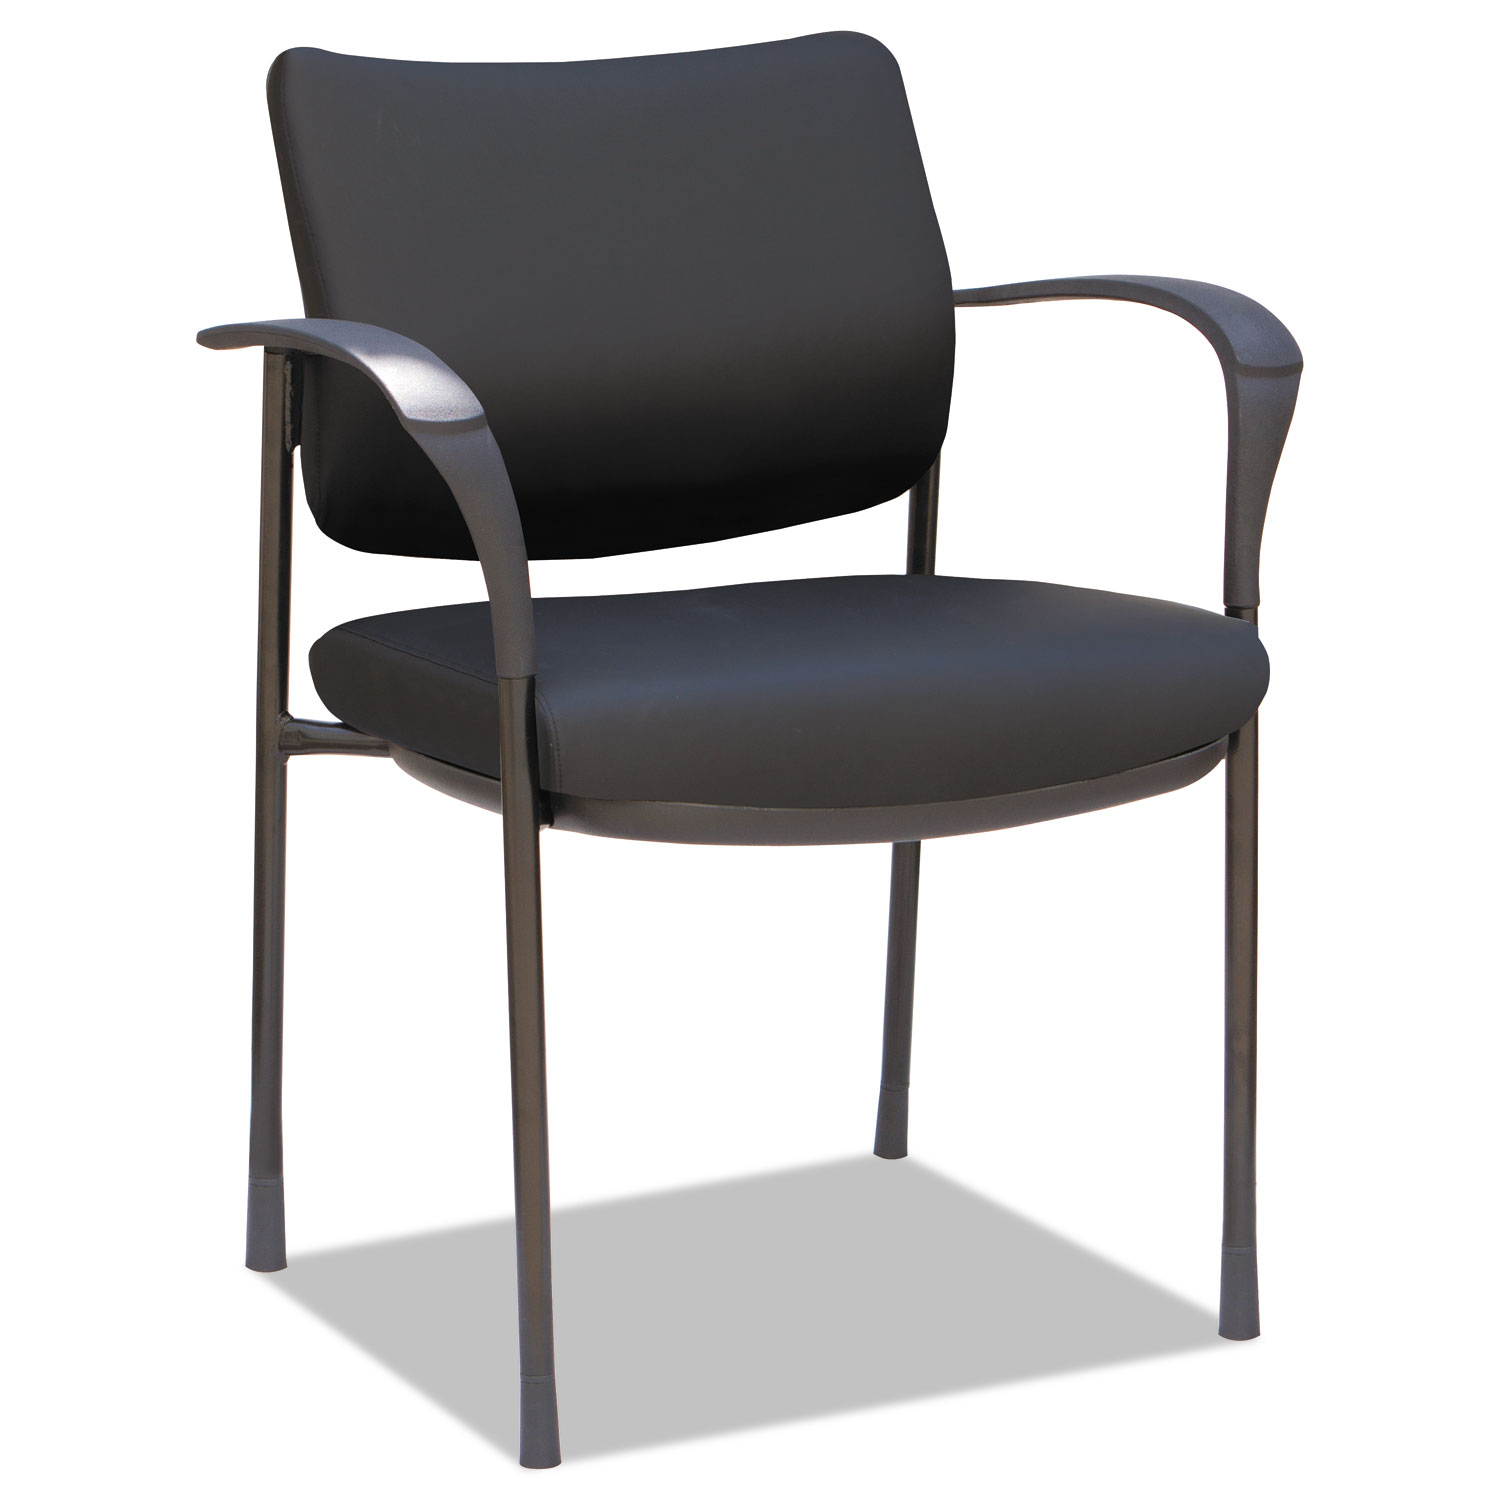  Alera ALEIV4319A Alera IV Series Guest Chairs, 24.80'' x 22.83'' x 32.28'', Black Seat/Black Back, Black Base, 2/Carton (ALEIV4319A) 